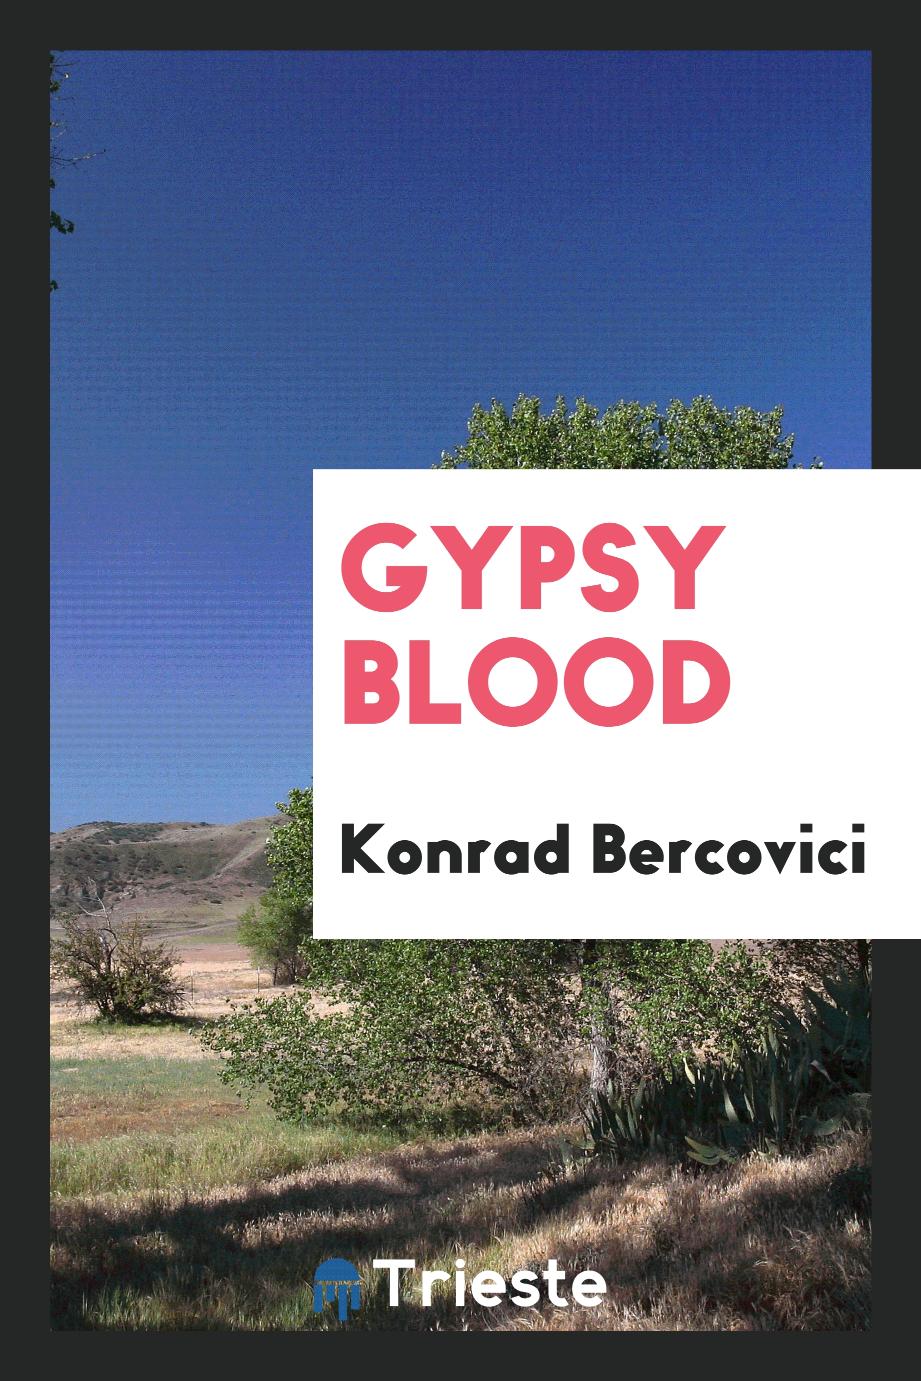 Gypsy blood